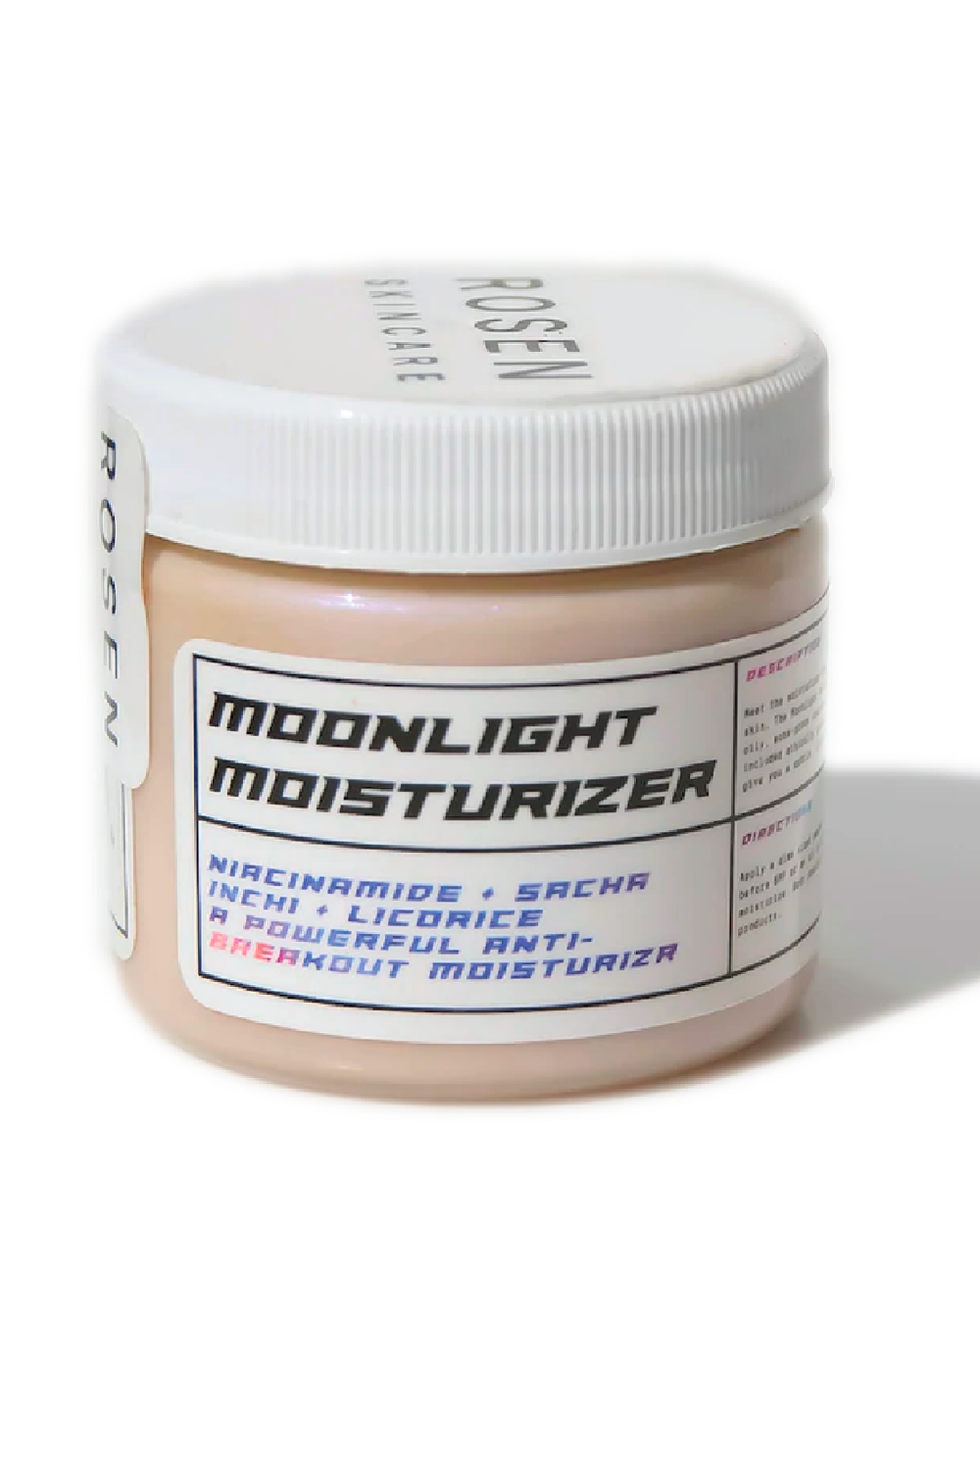 Rosen Skincare Moonlight Moisturizer